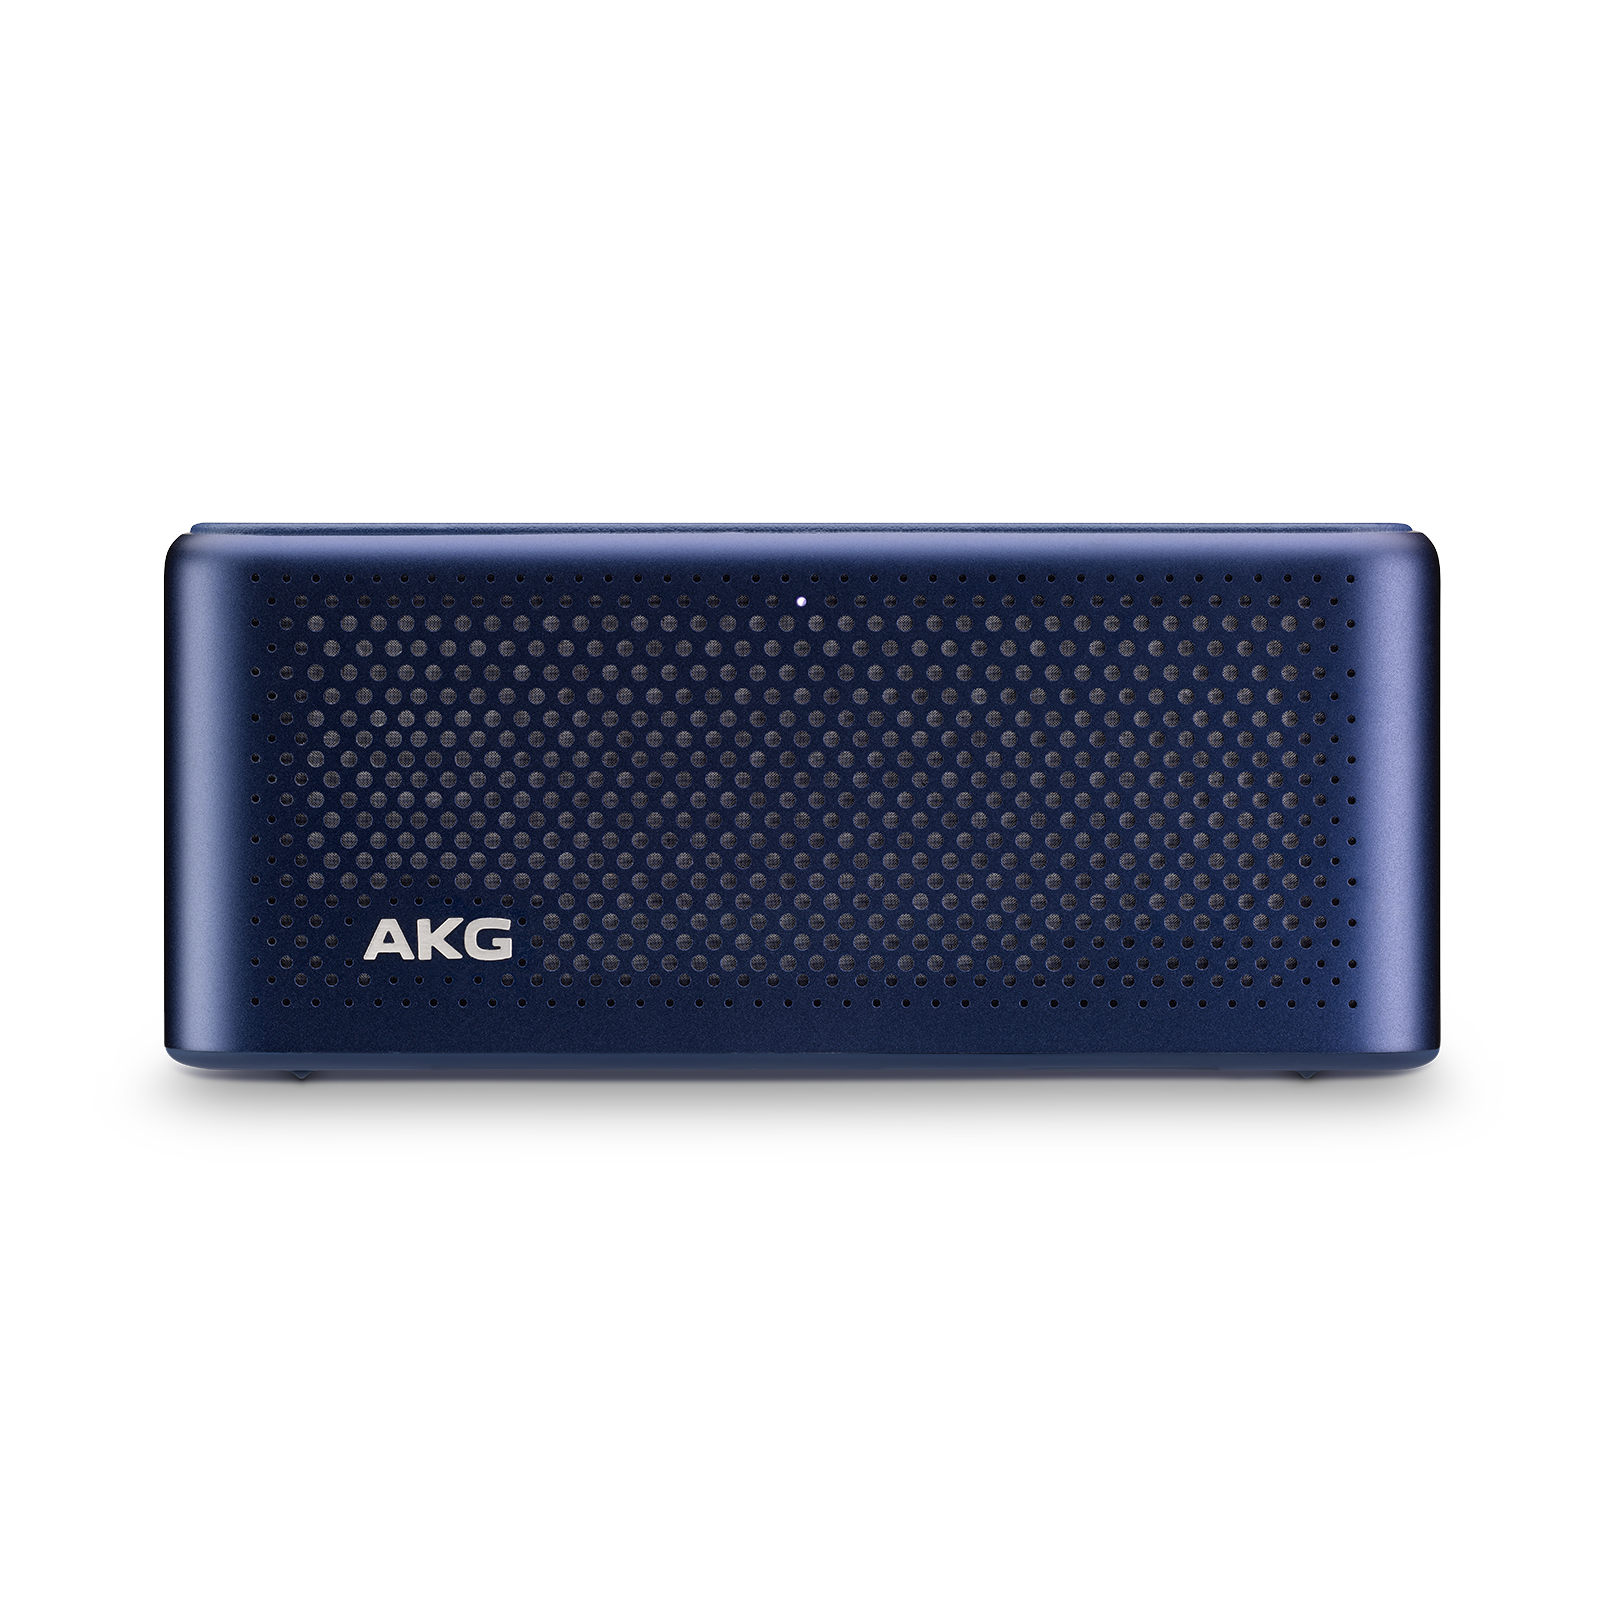 S30 Travel Speaker - Blue - All-in-one travel speaker - Detailshot 2